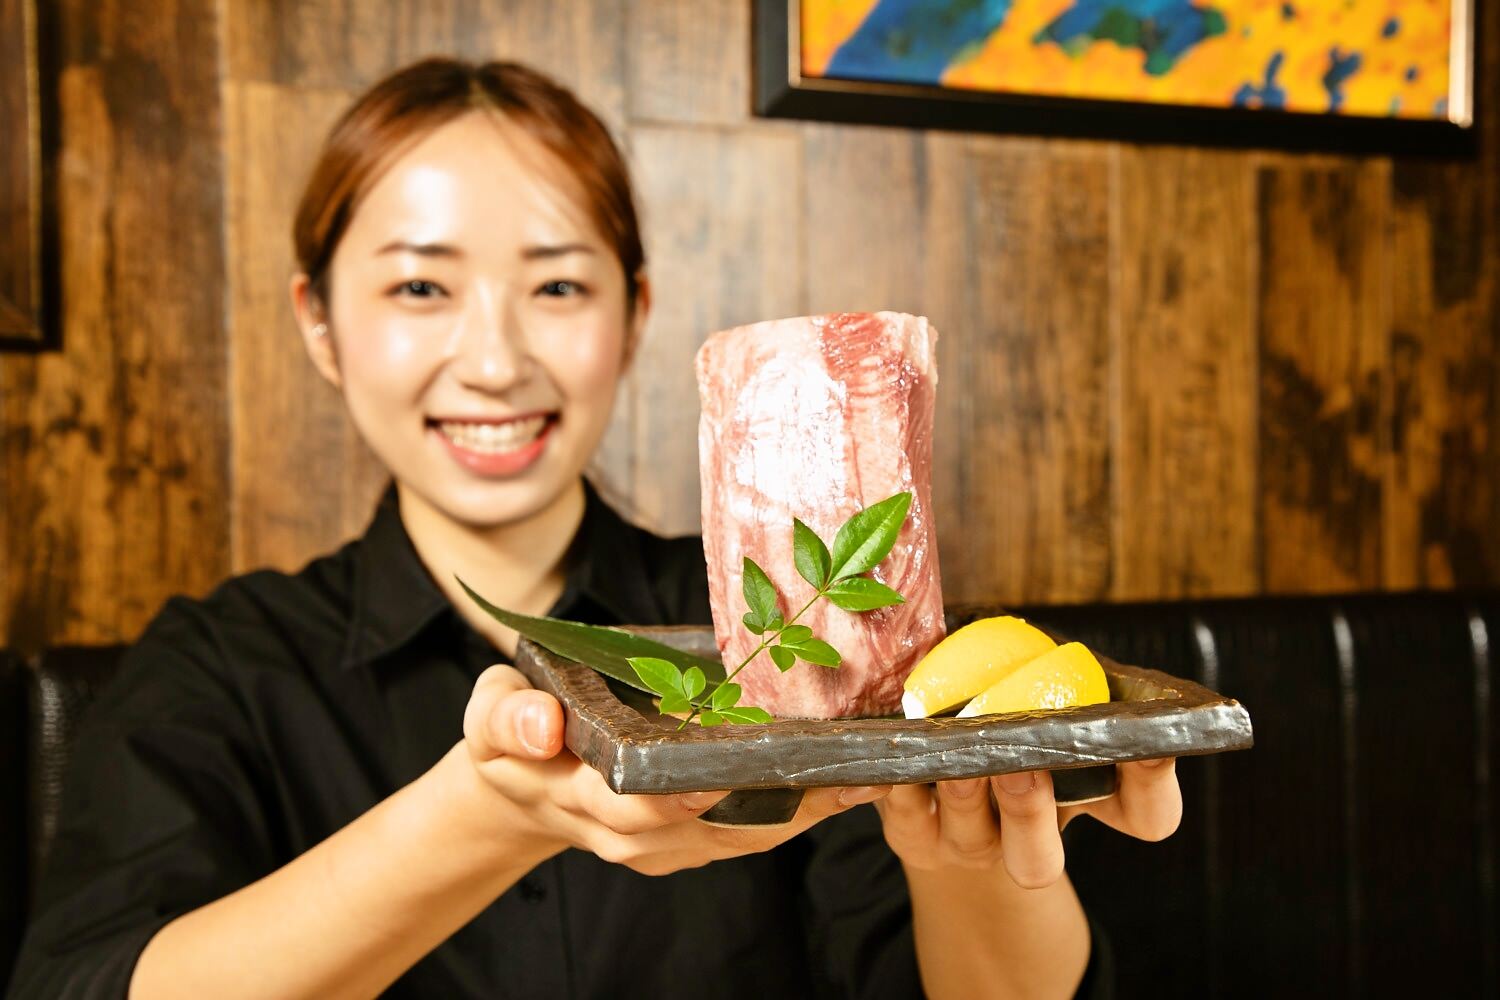 熊野産本まぐろフェア開催！
市内13店舗にて刺身、カツ、ステーキなど
素材を生かした料理で提供